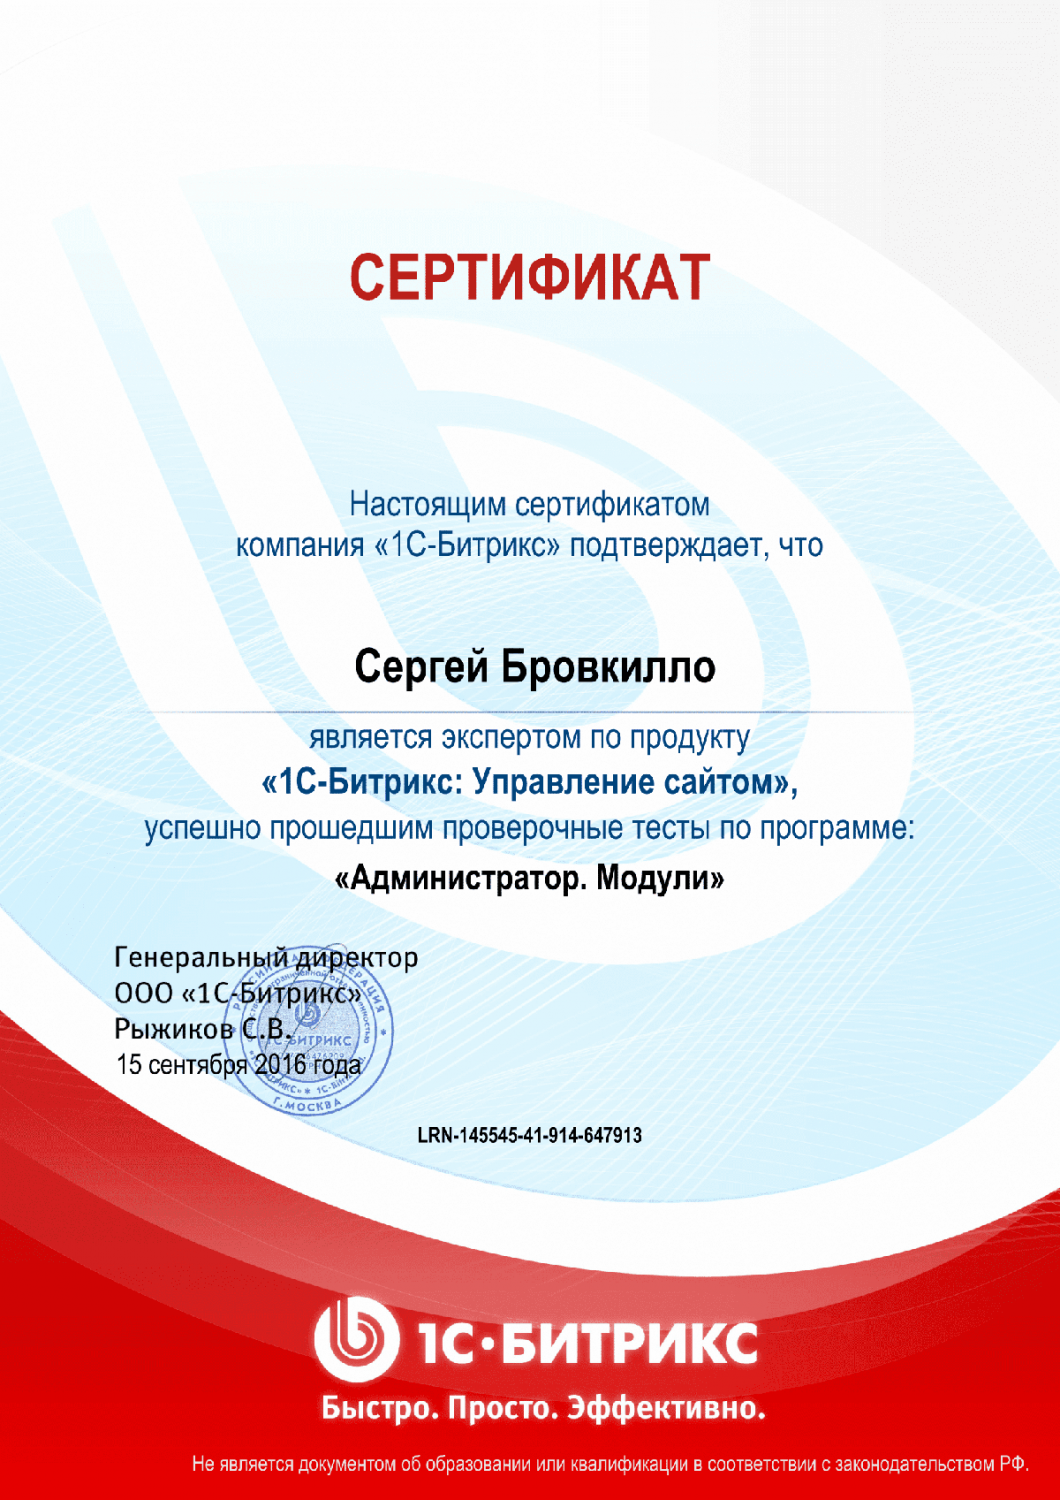 Сертификат эксперта по программе "Администратор. Модули" в Ростова-на-Дону